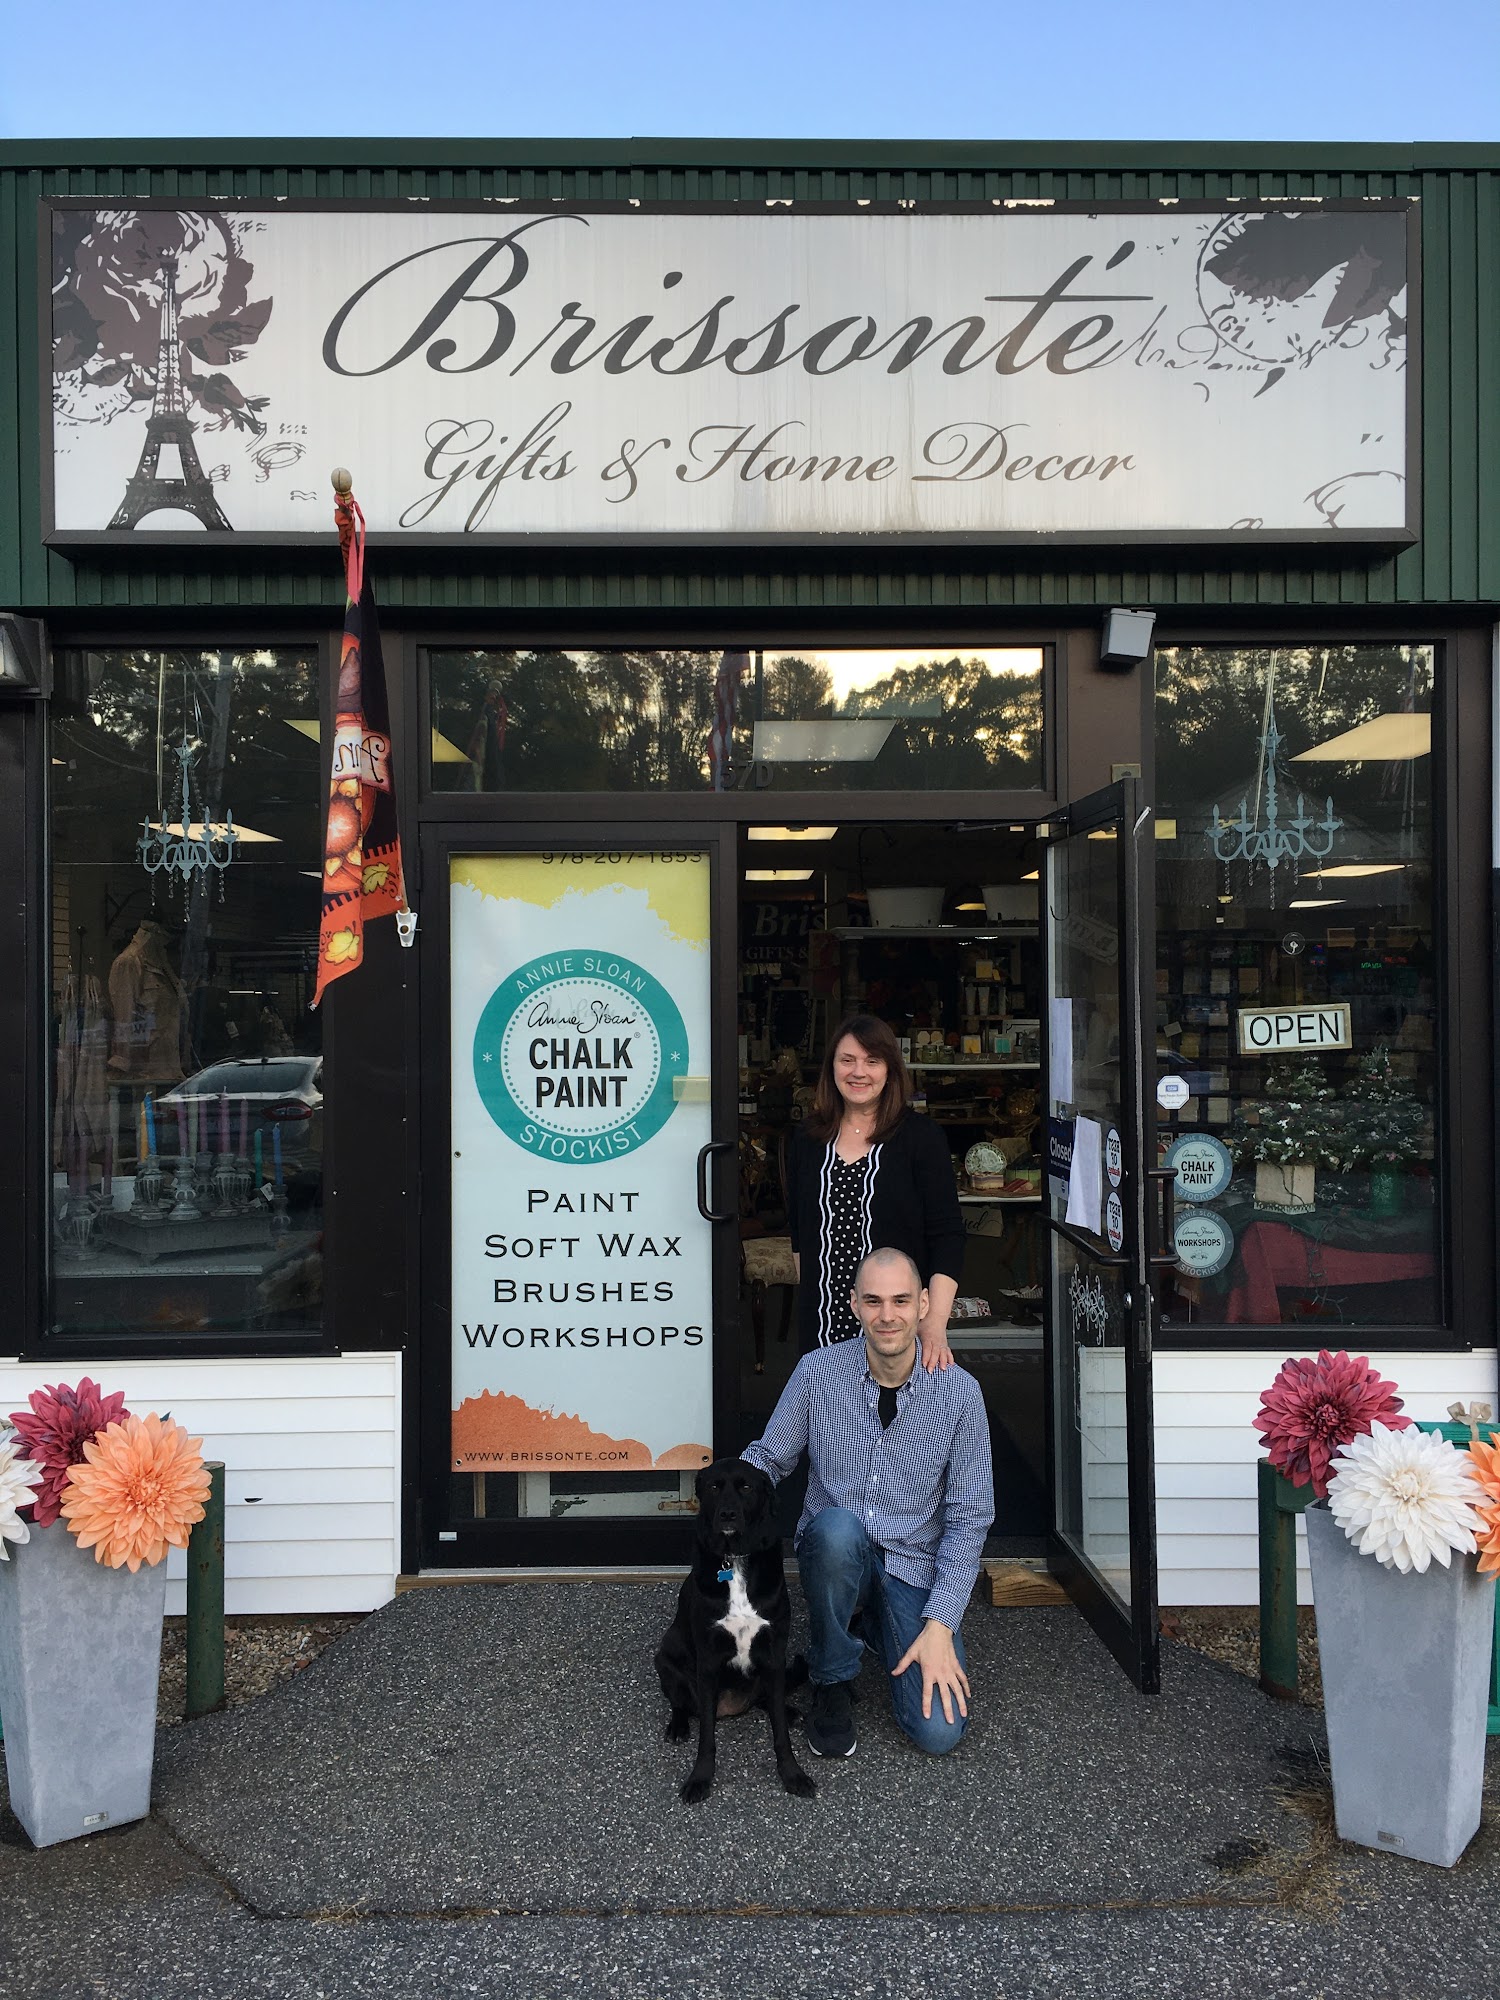 Brissonte` Gifts & Home Decor